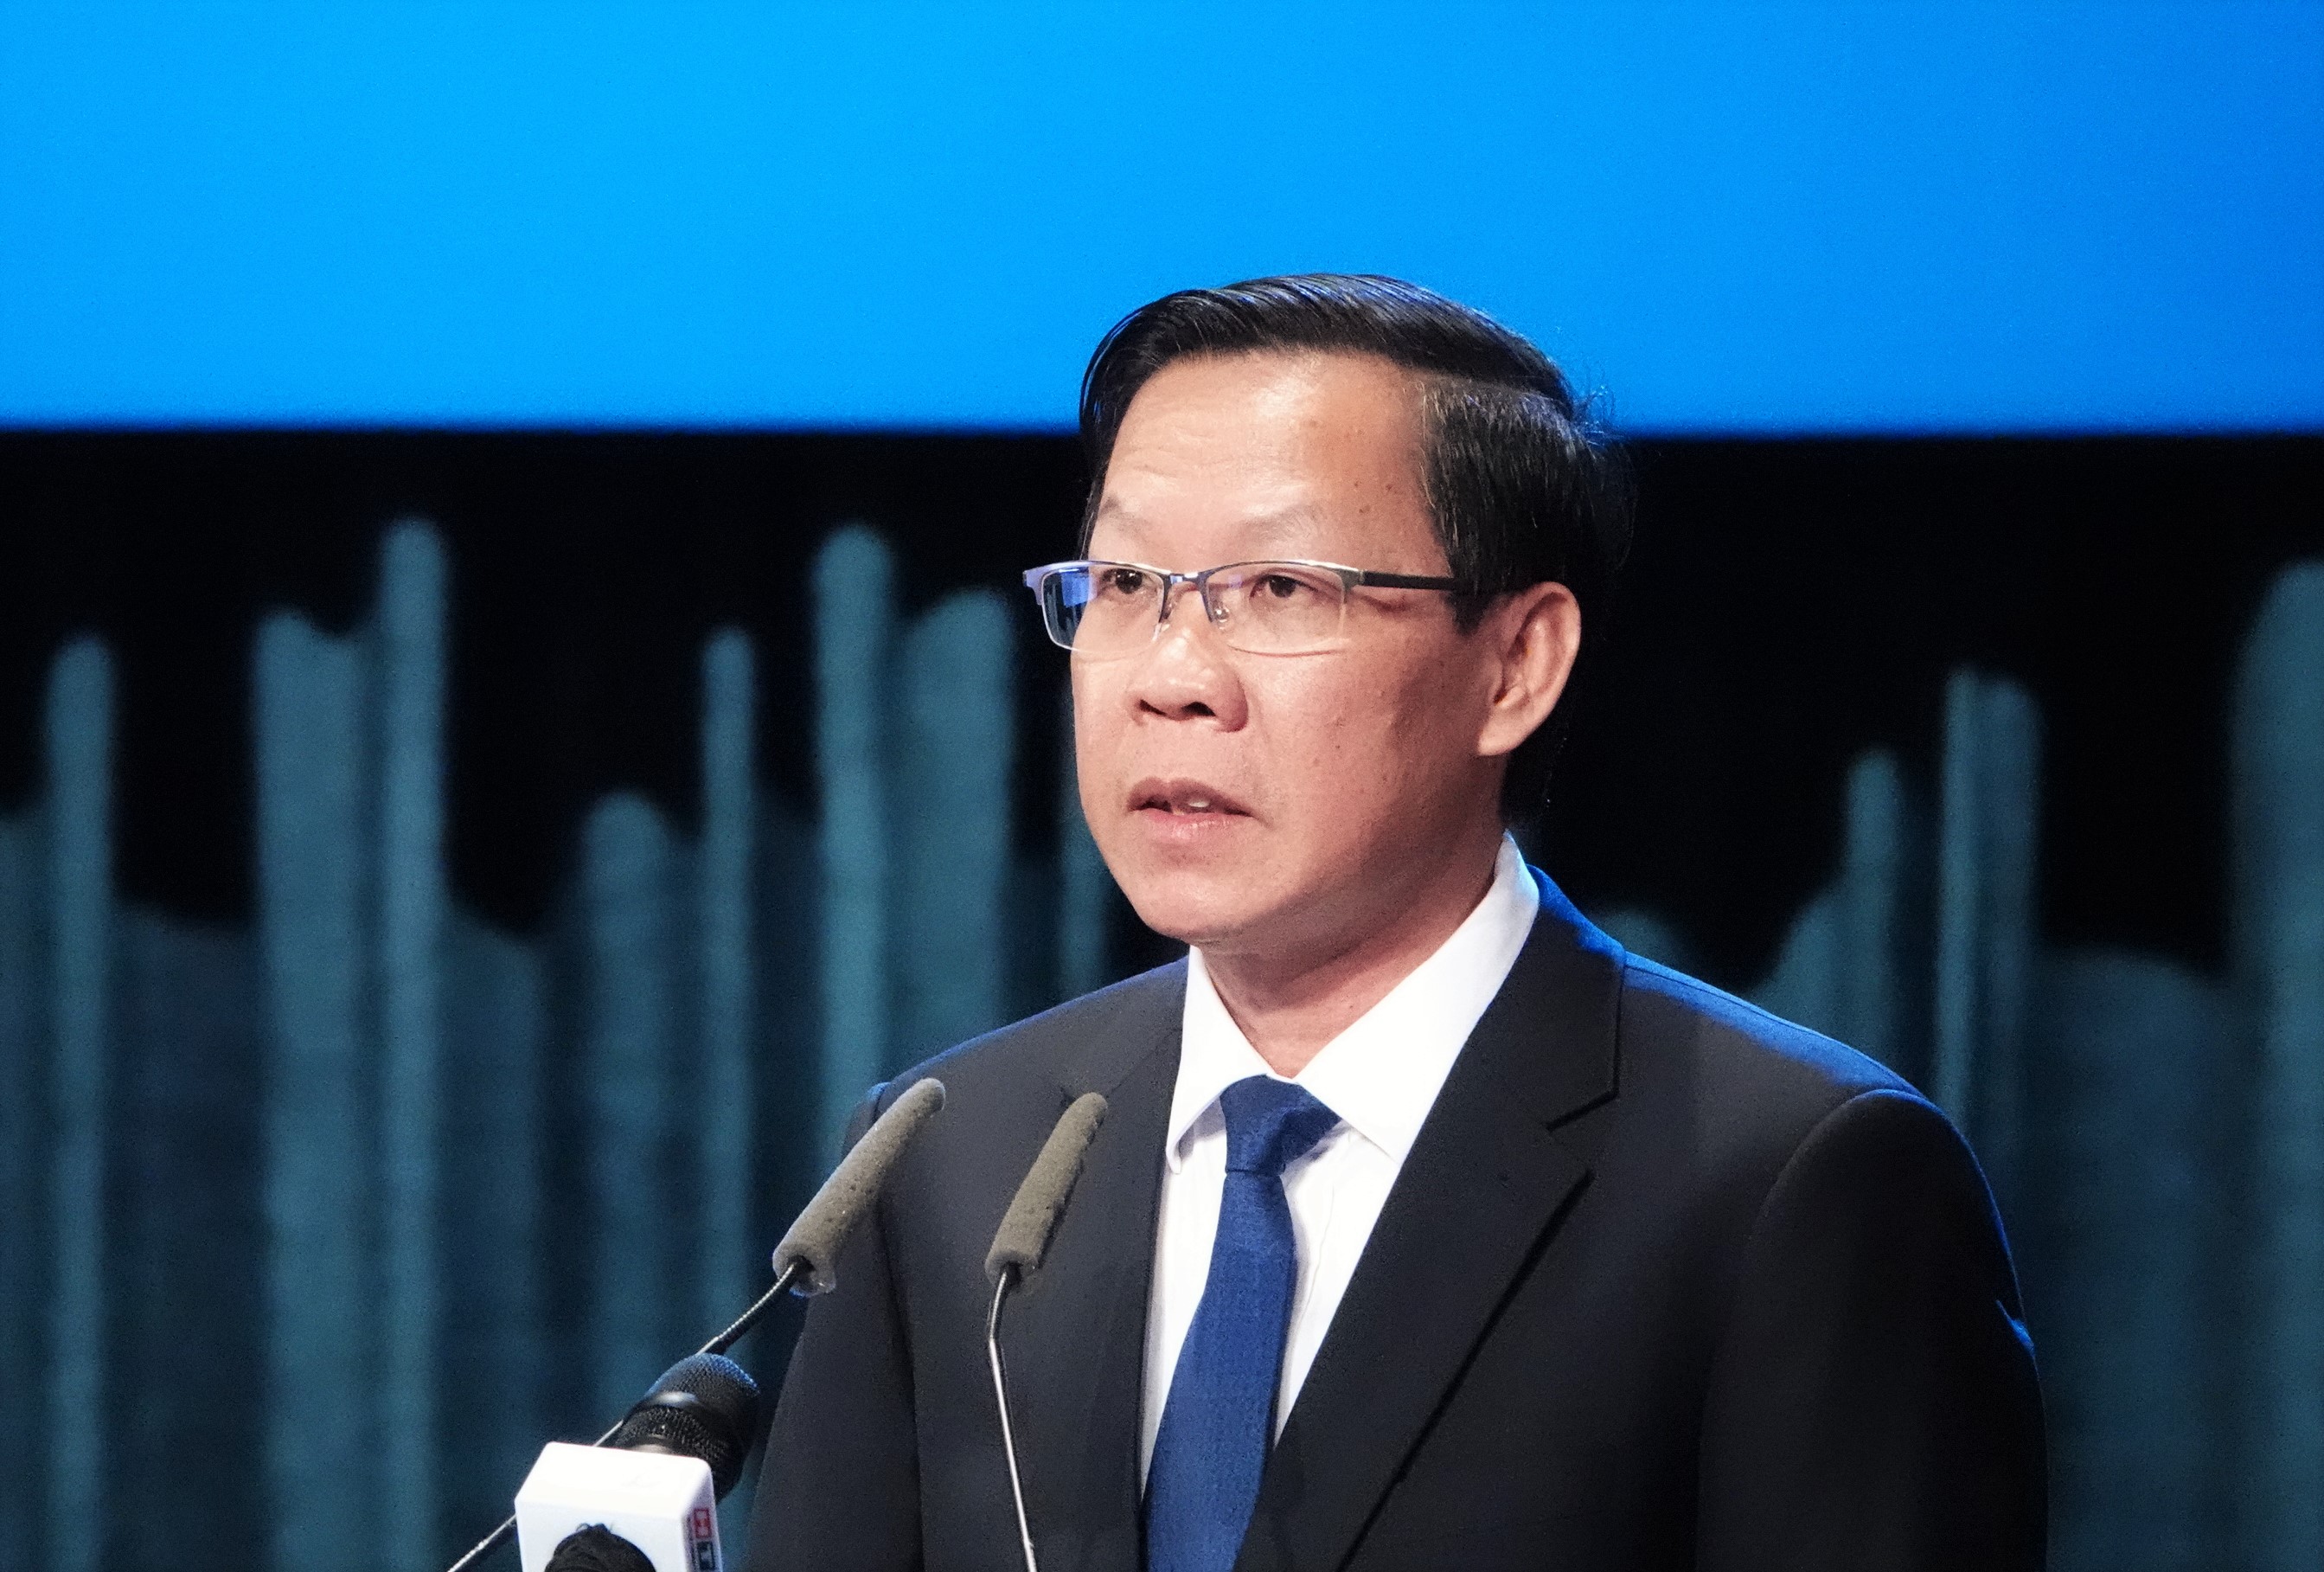 TP.HCM: Chủ tịch Phan Văn Mãi làm Trưởng ban chỉ đạo chuyển đổi số